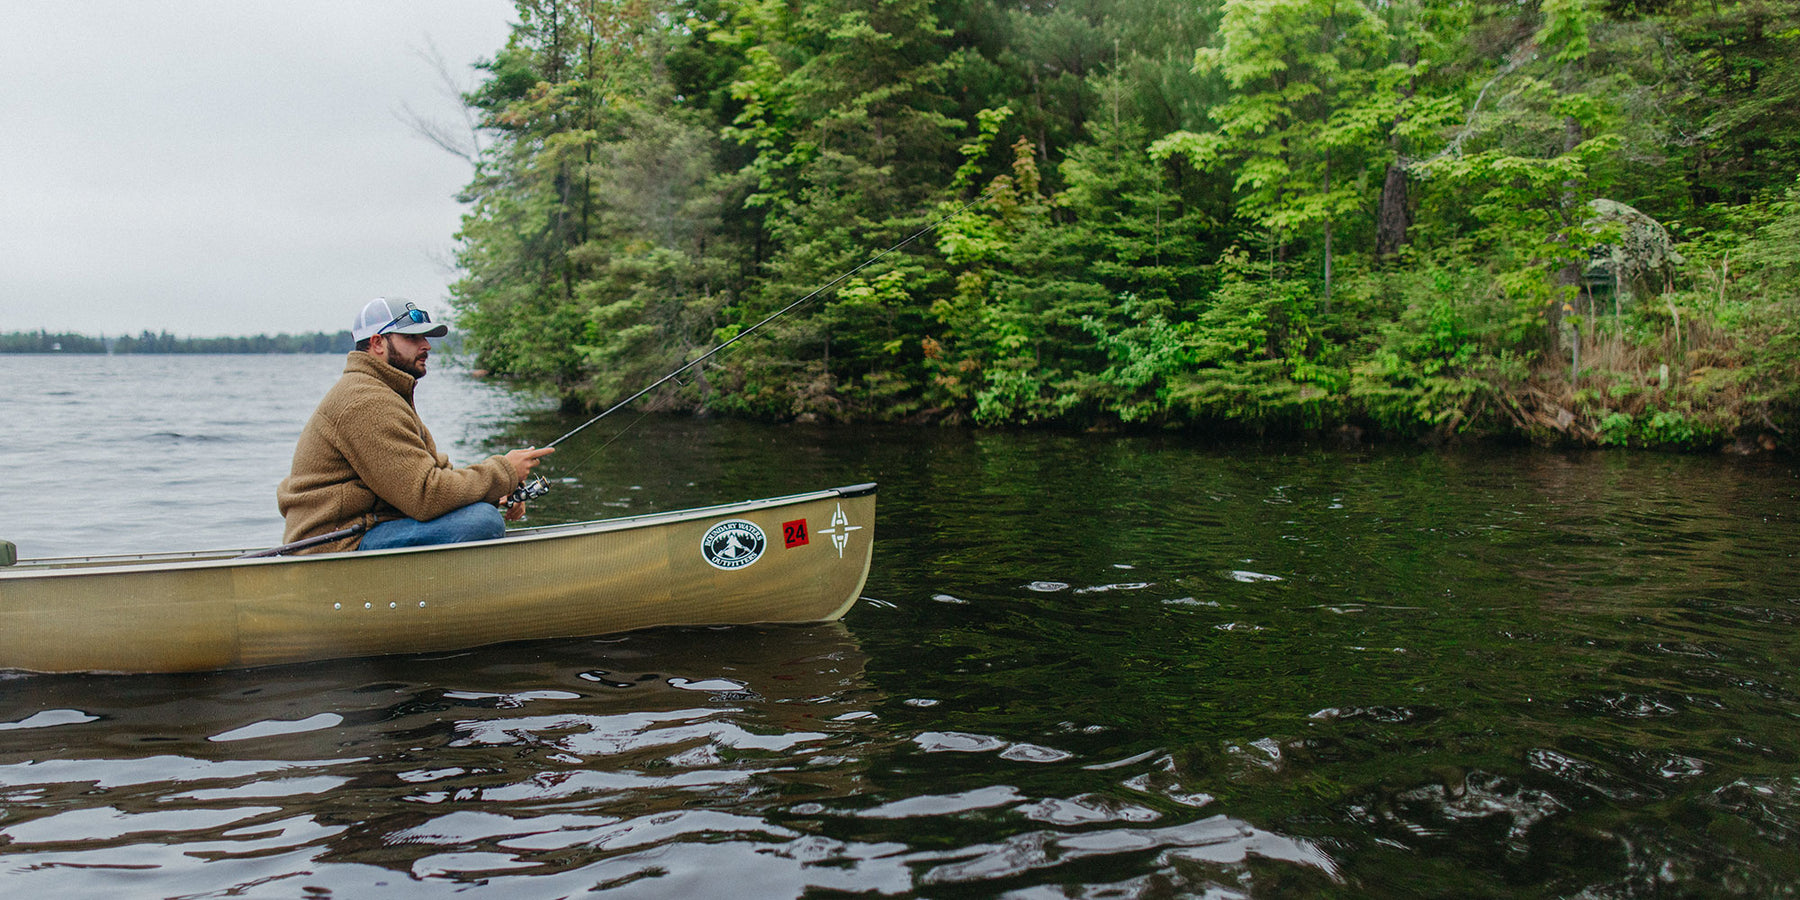 Canoeing & Fishing